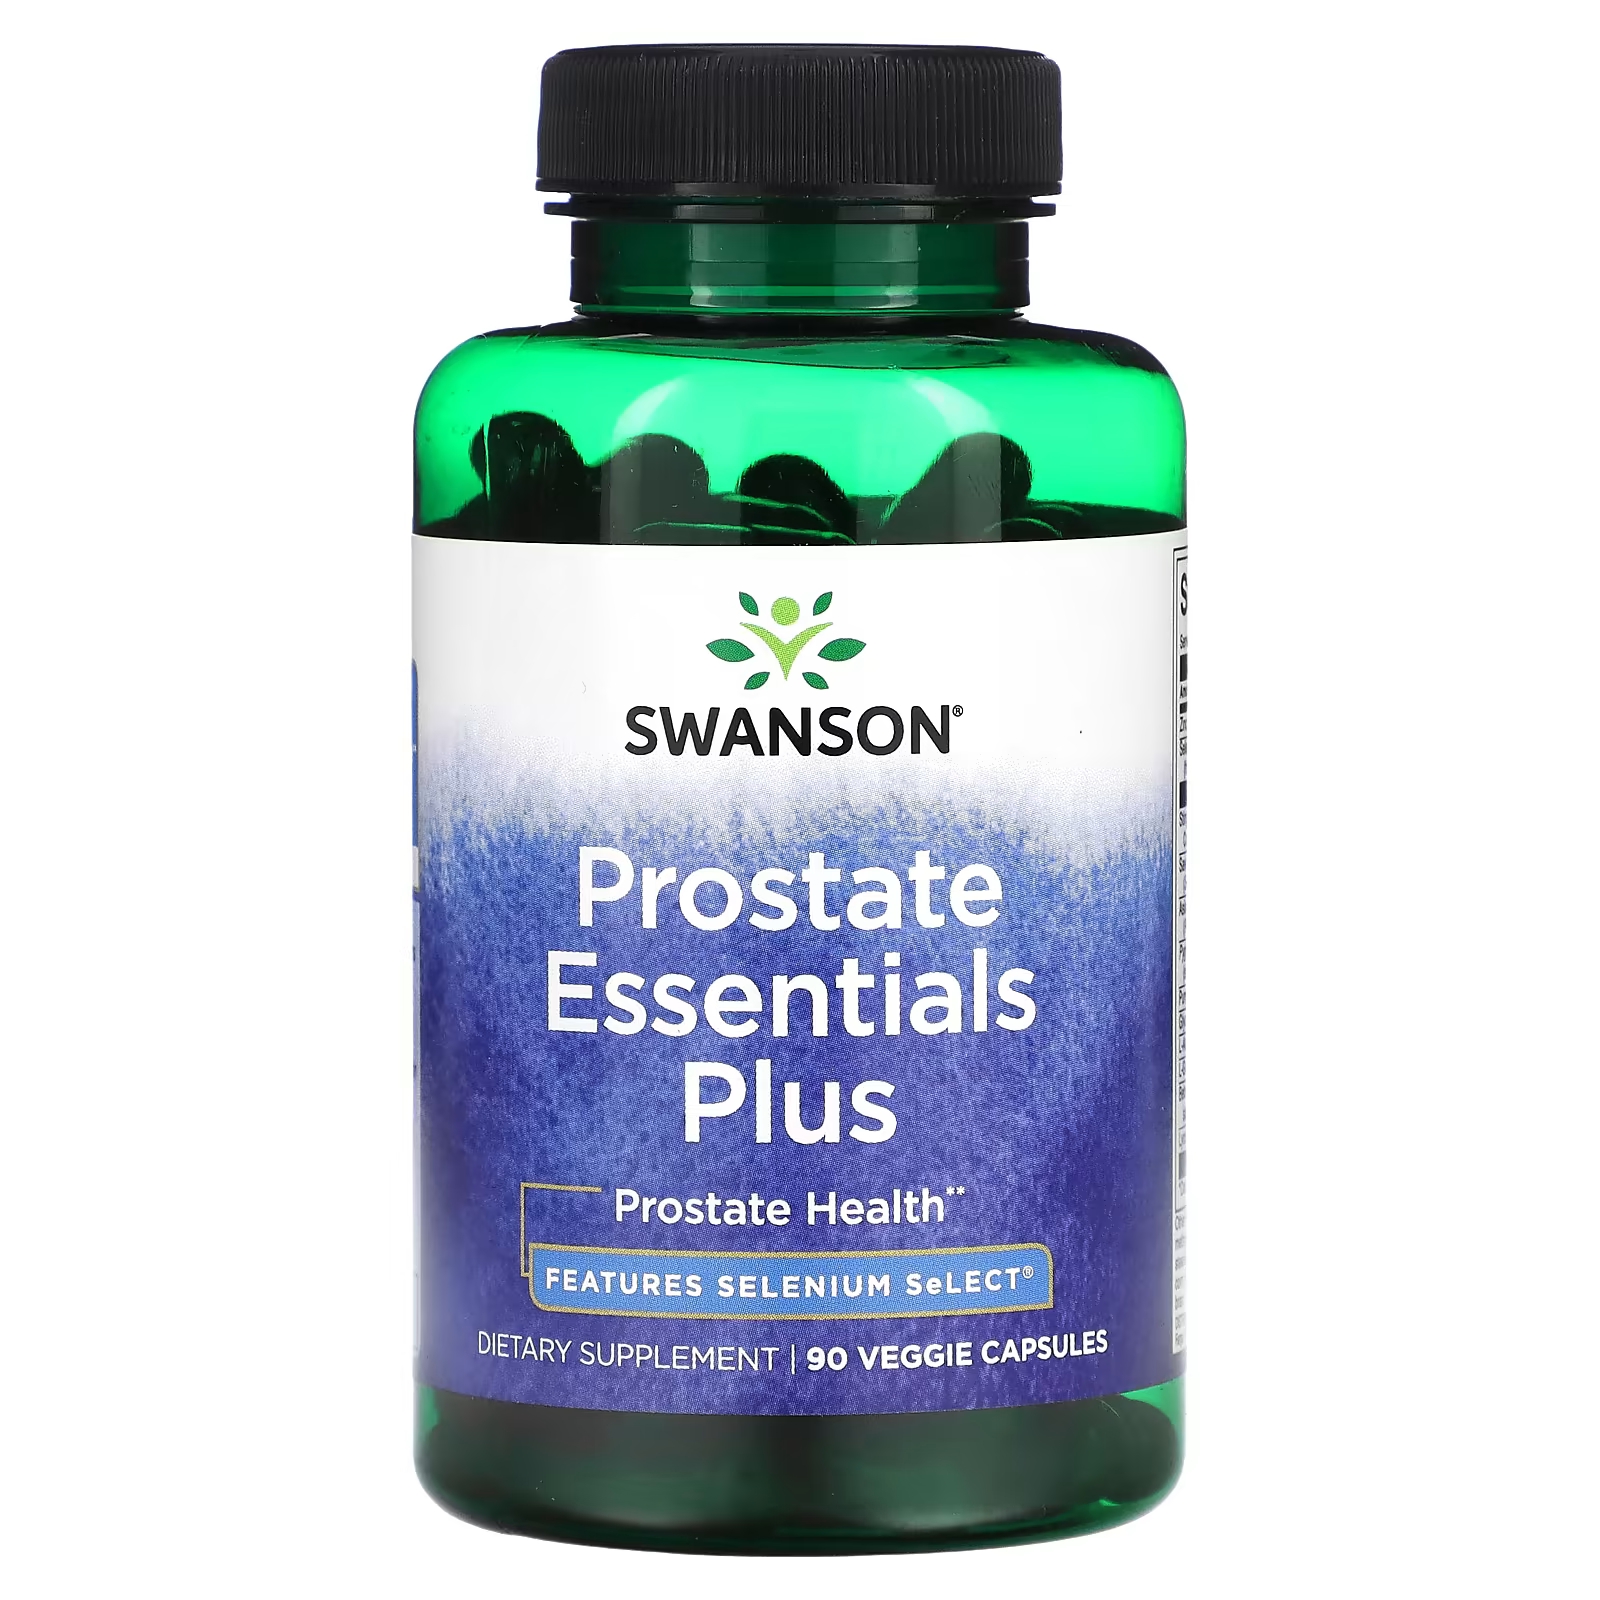 Пищевая добавка Swanson для здоровья простаты, 90 капсул пищевая добавка snap supplements здоровье простаты 90 капсул